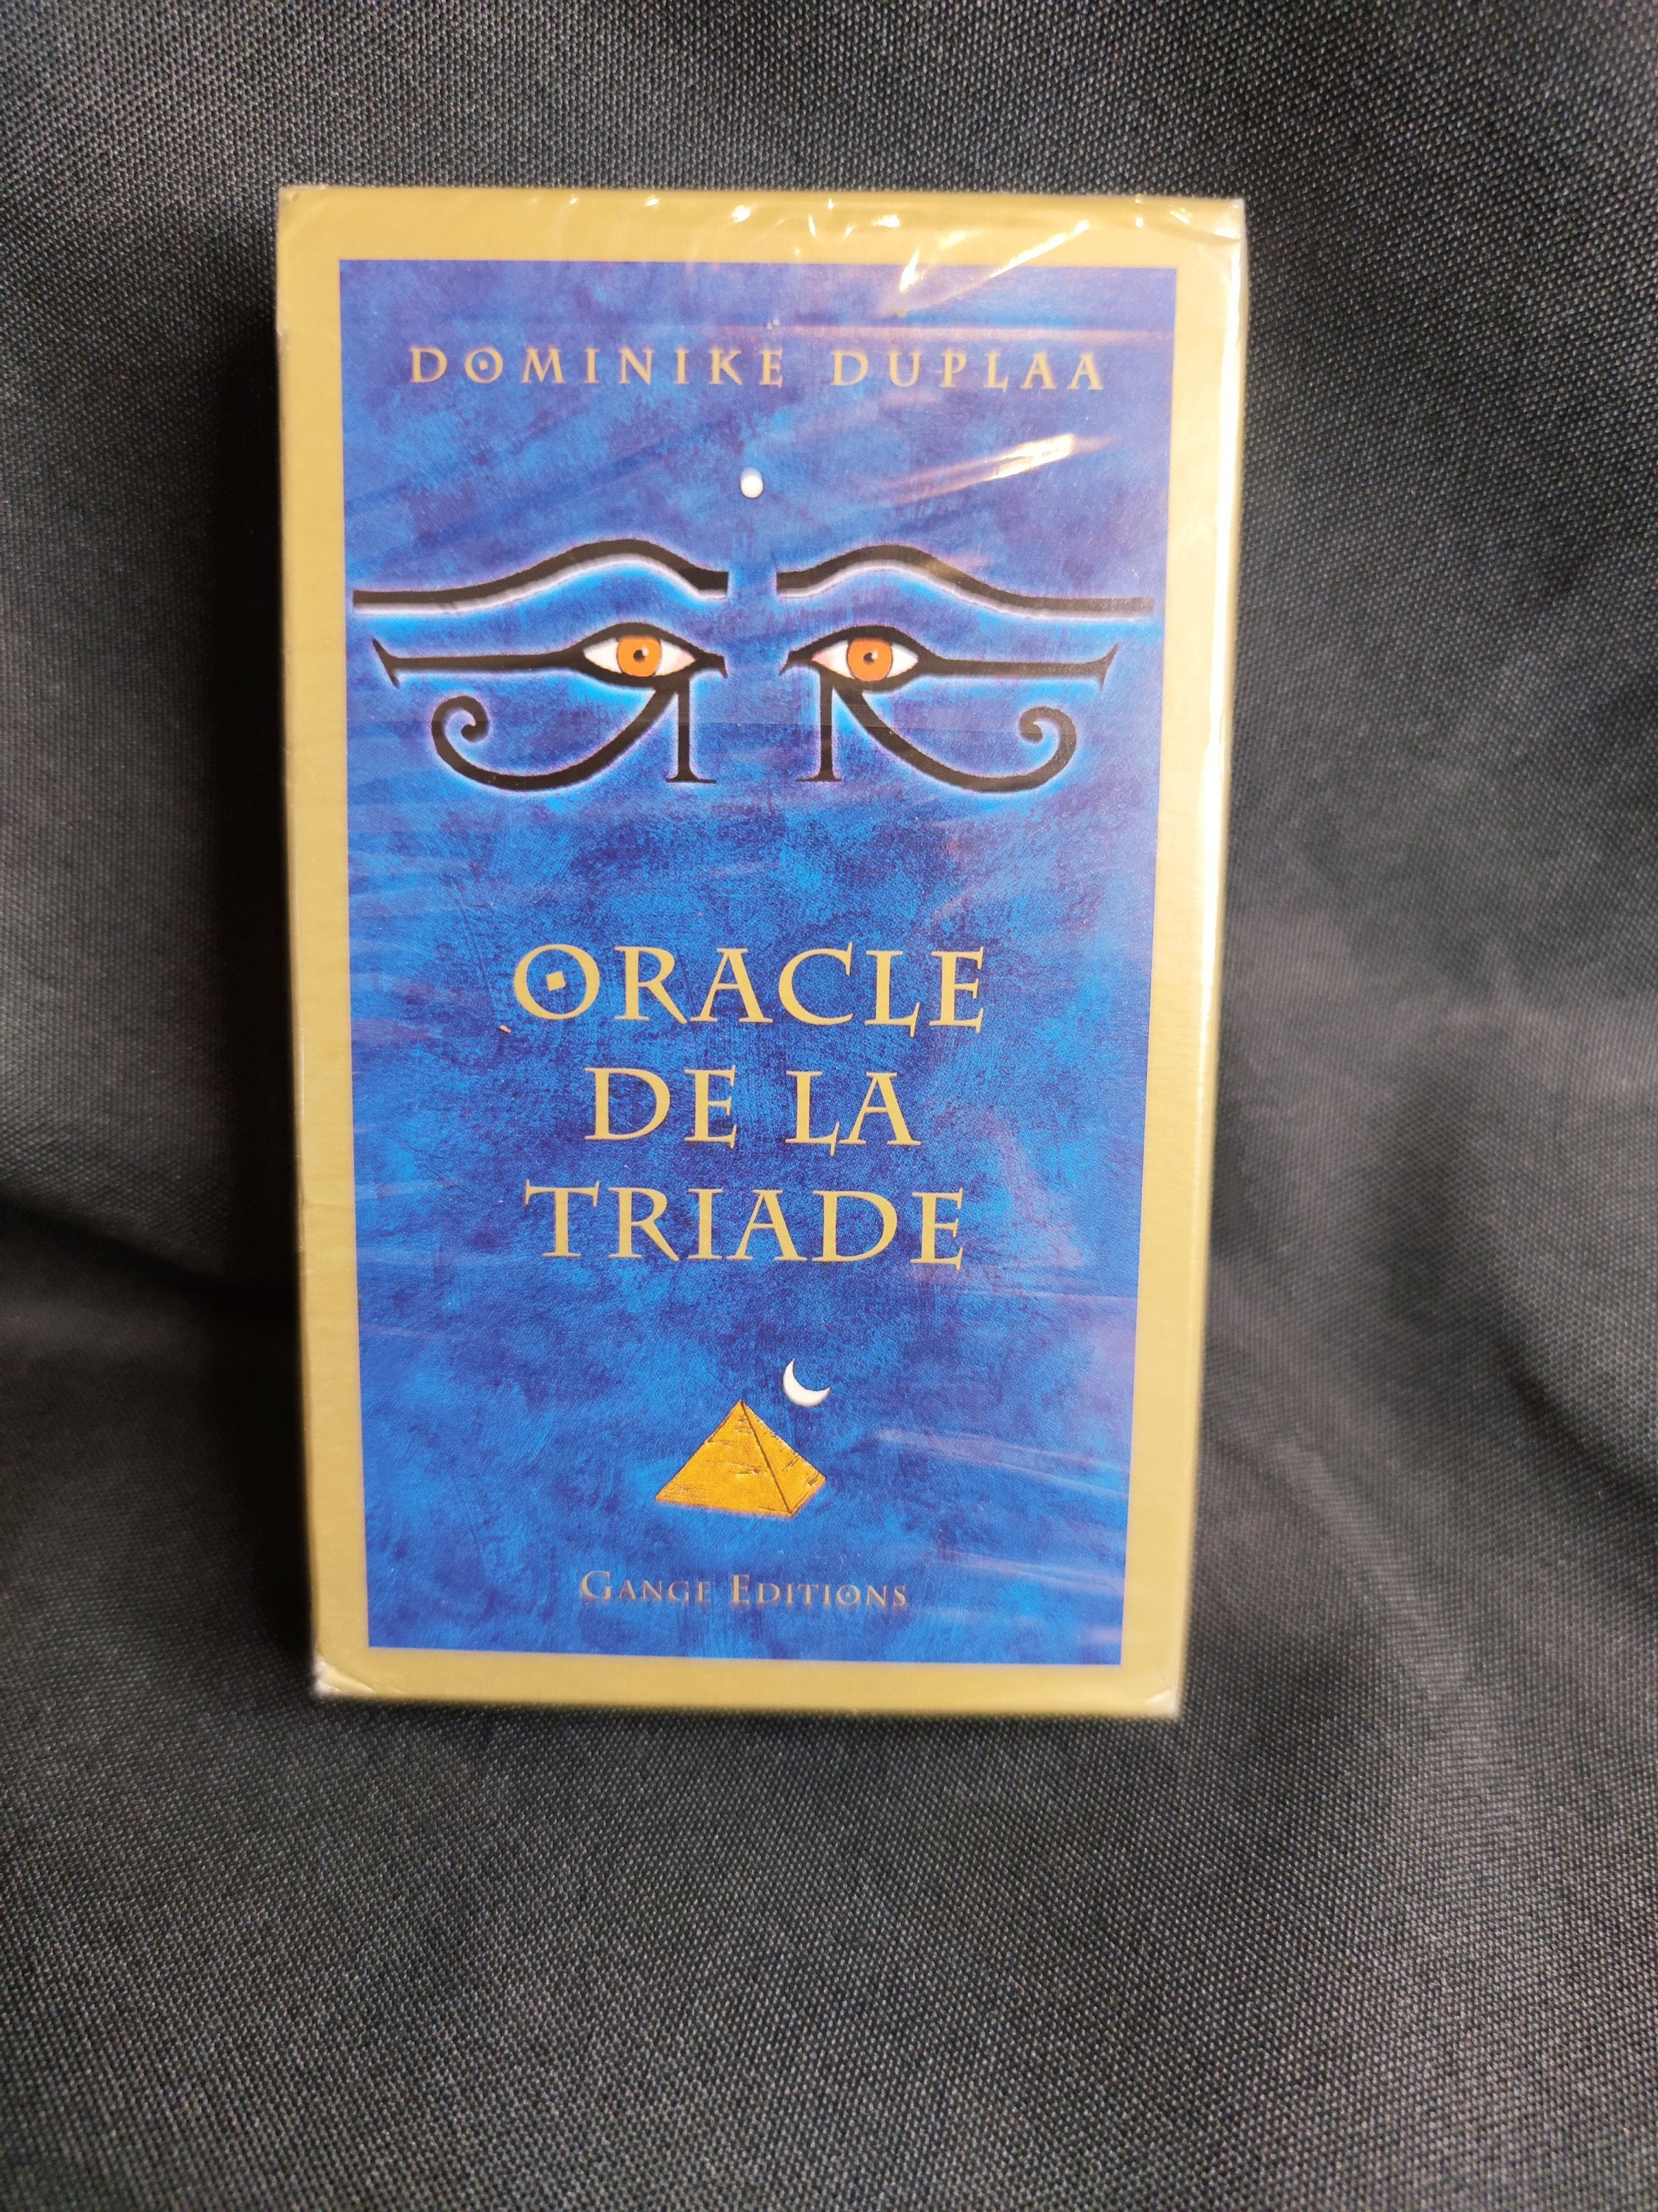 Oracle de la Triade cartes de Dominike Duplaa review